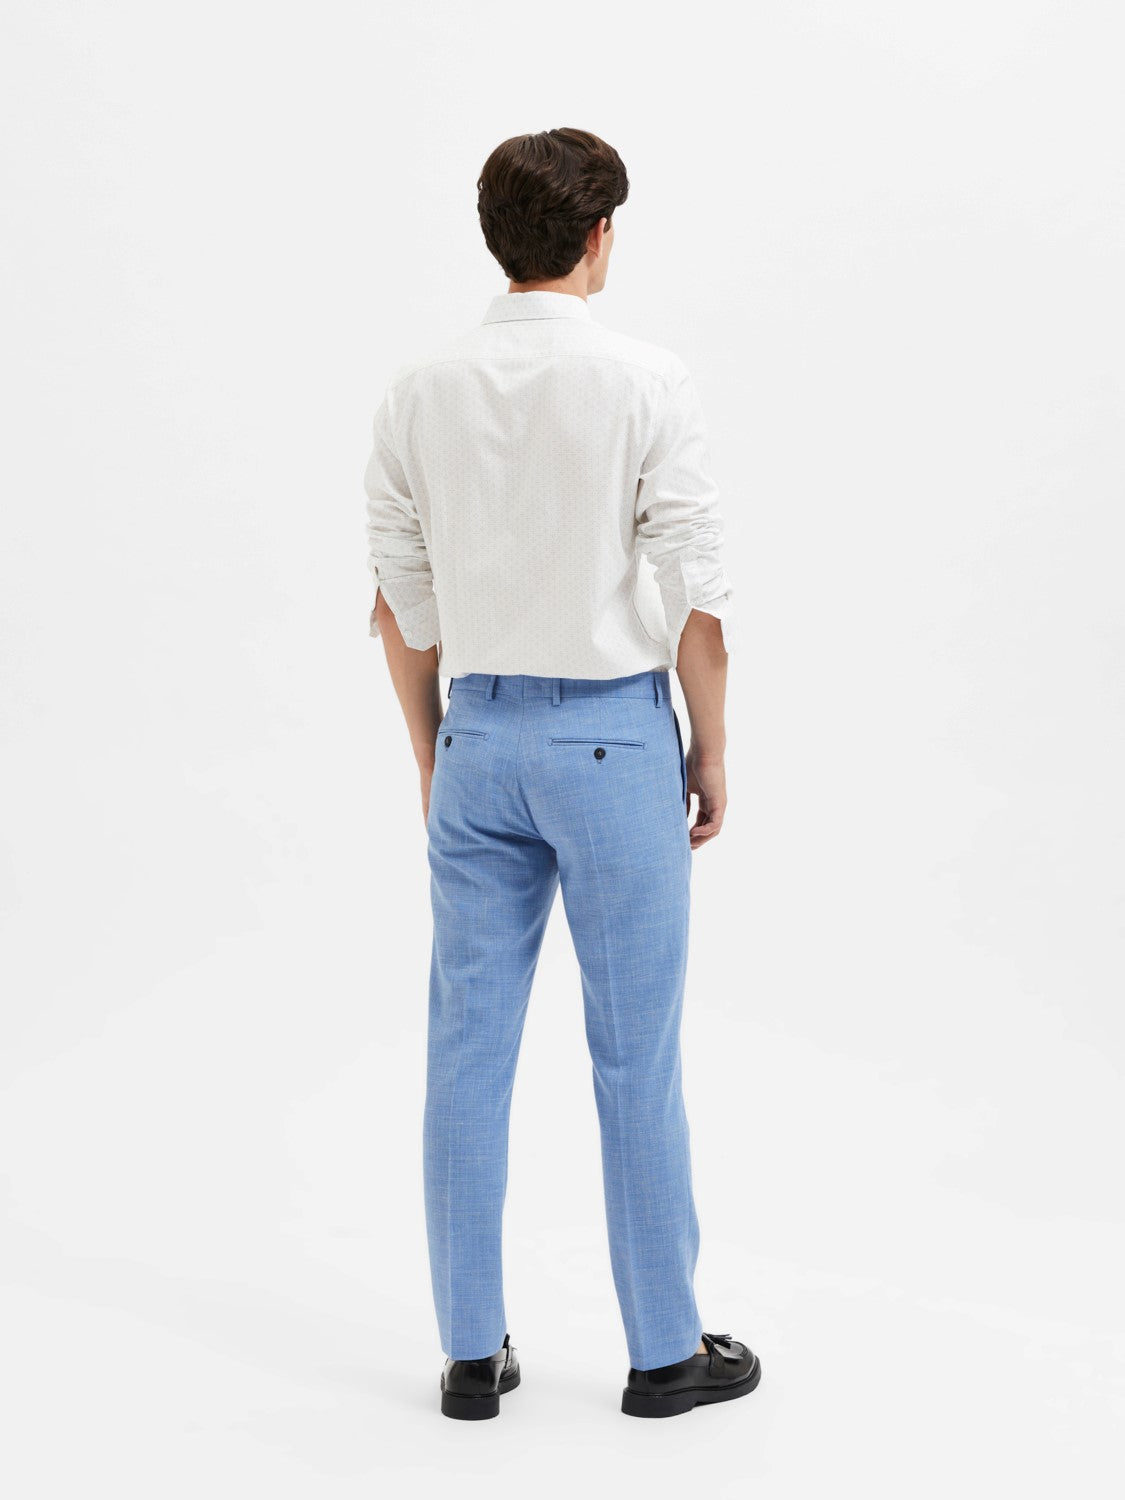 SELECTED Oasis Linen Suit Pants Light Blue TWOJAYS